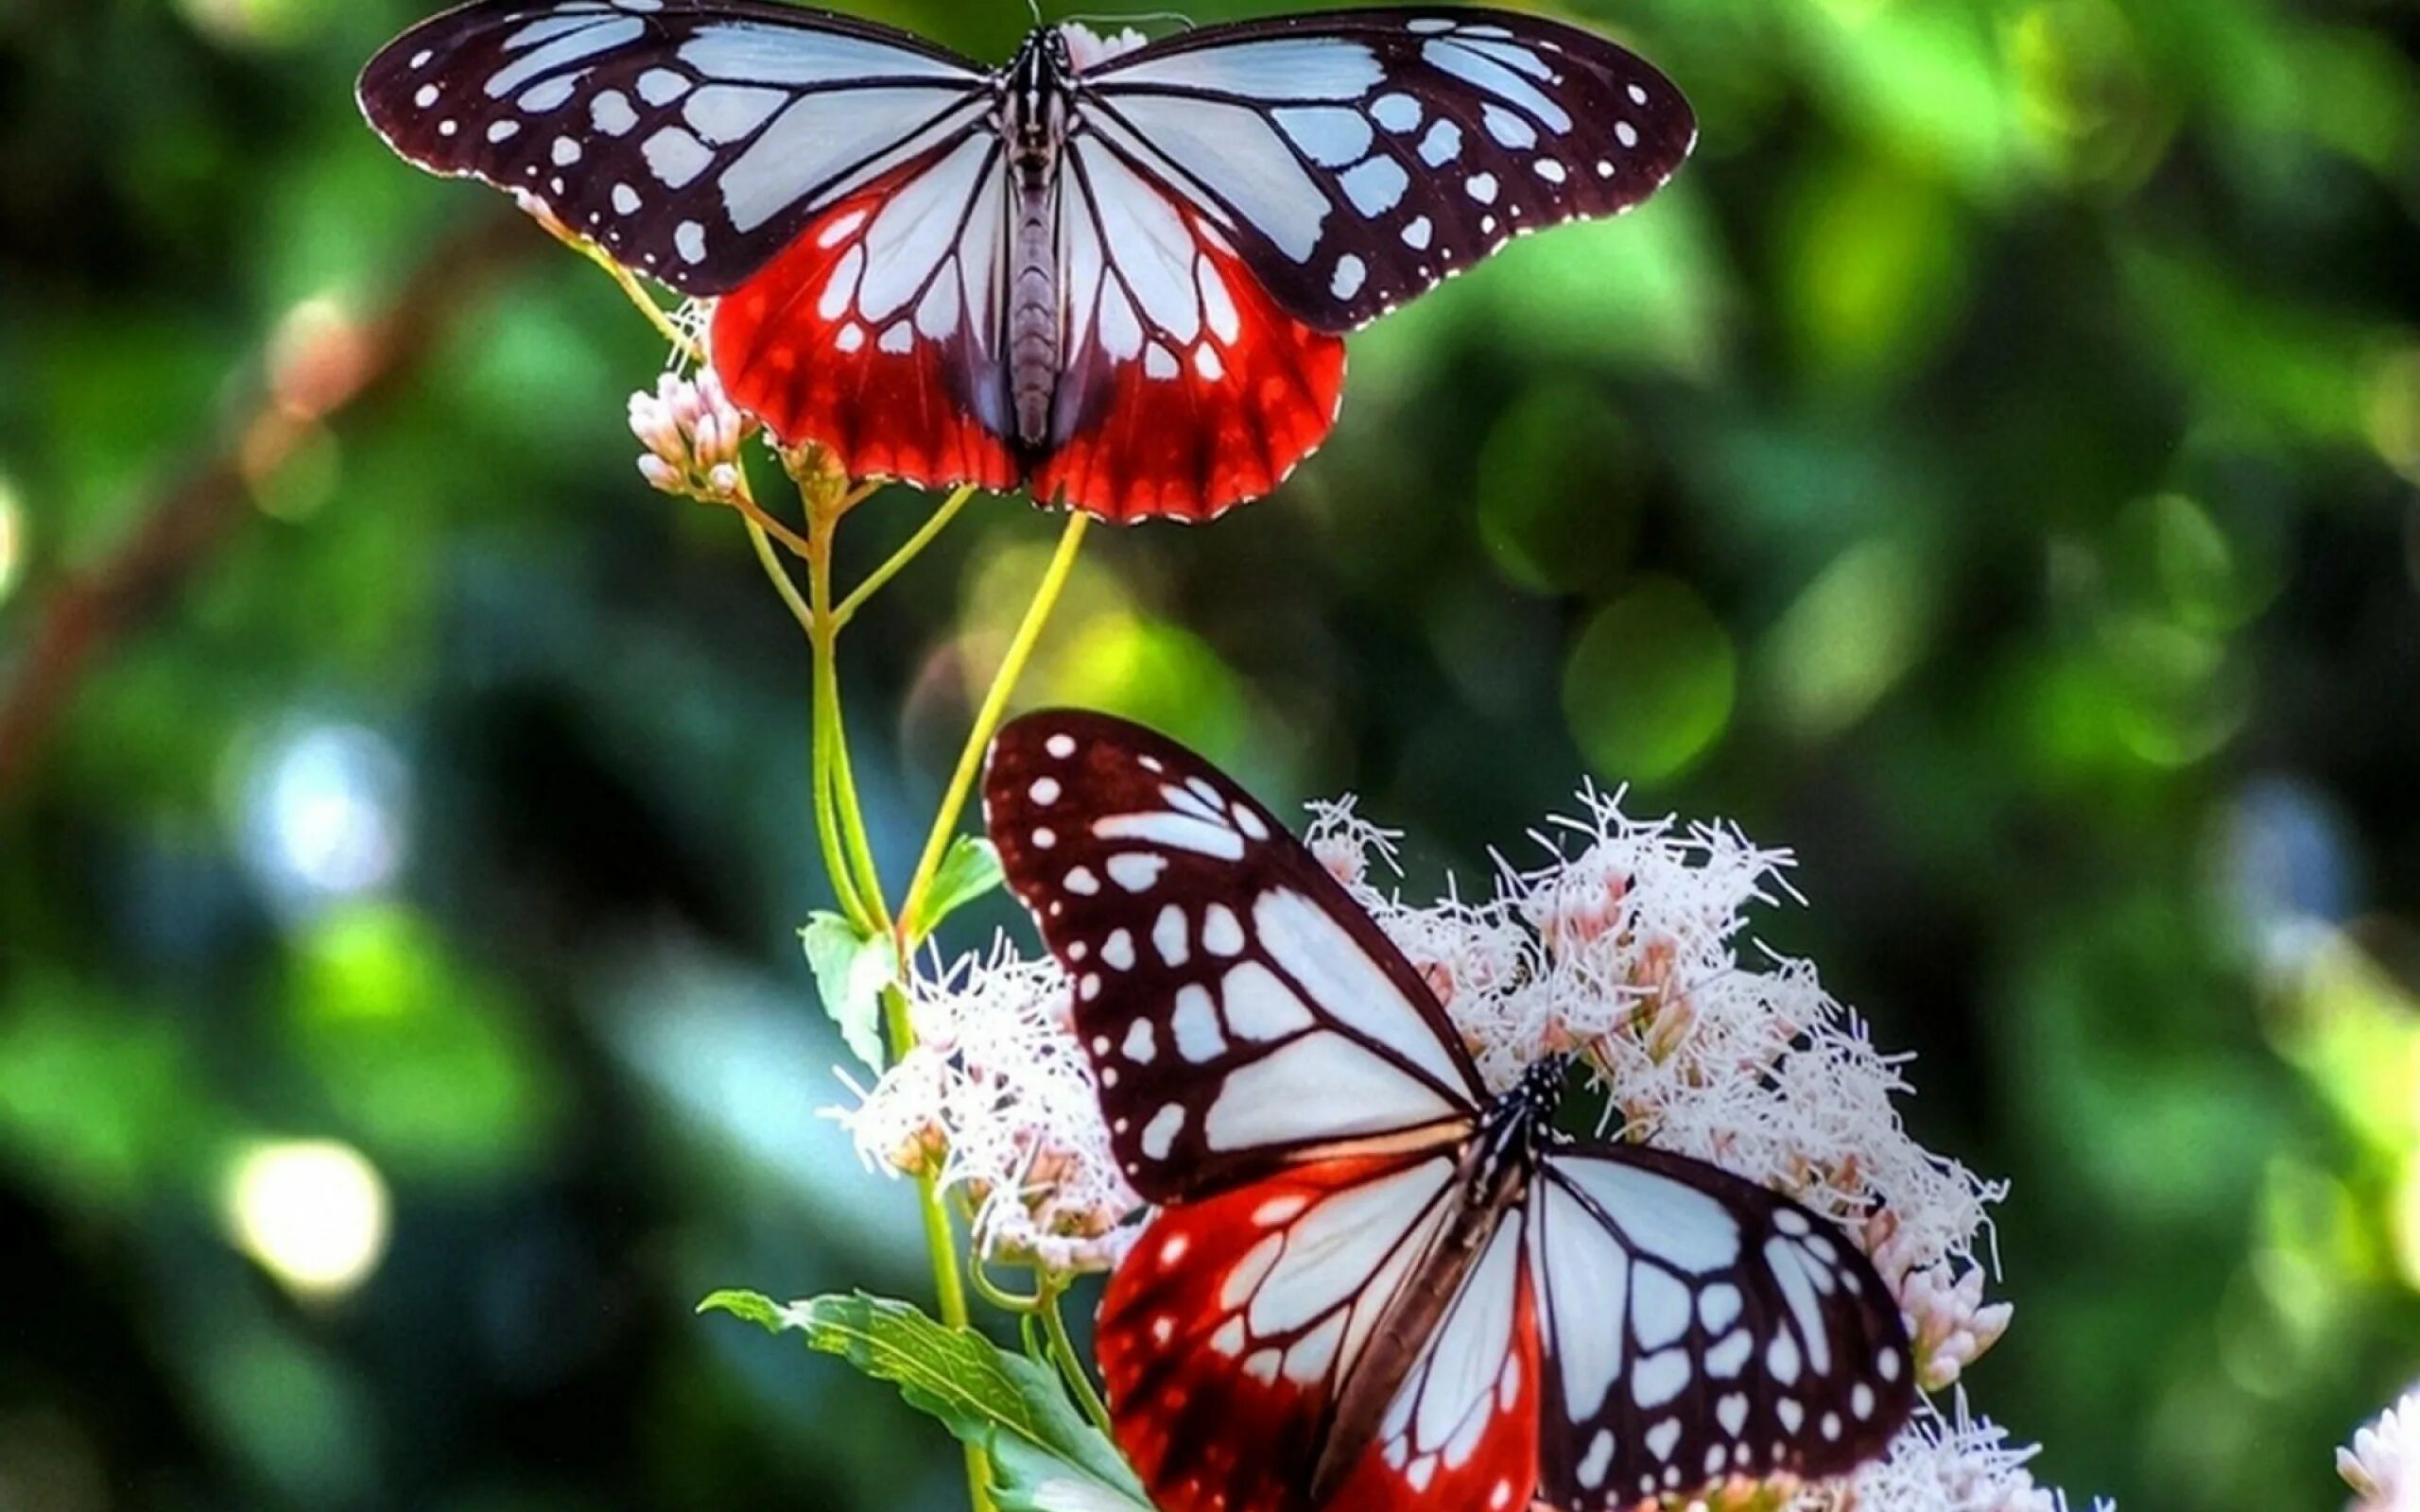 Картинку на экран телефона красивые обои. Яркие бабочки. Бабочка на цветке. Бабочки в природе. Заставка бабочки.